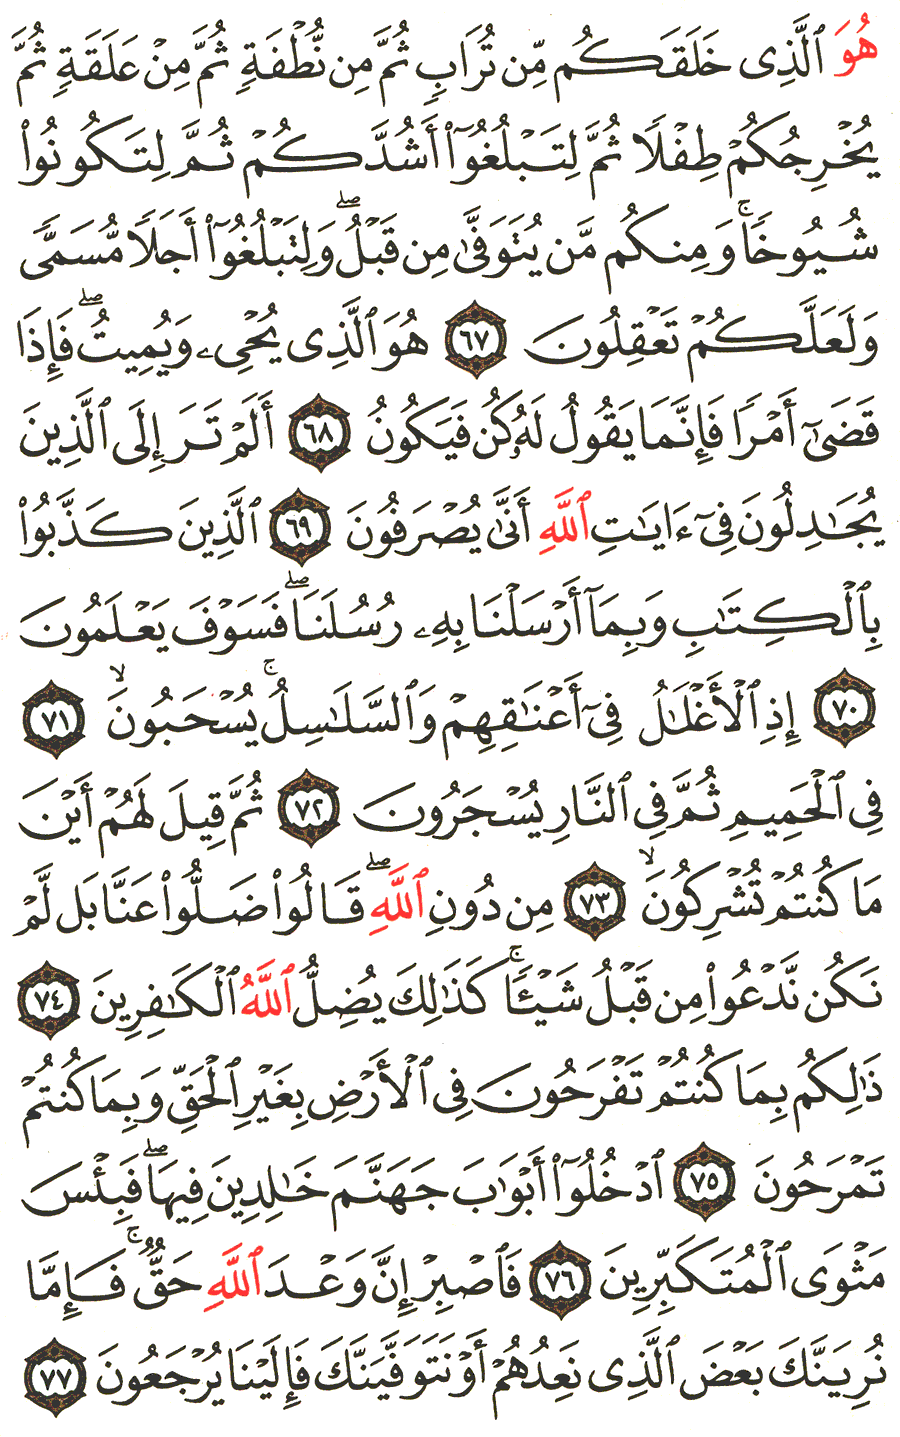 الصفحة 475 من القرآن الكريم